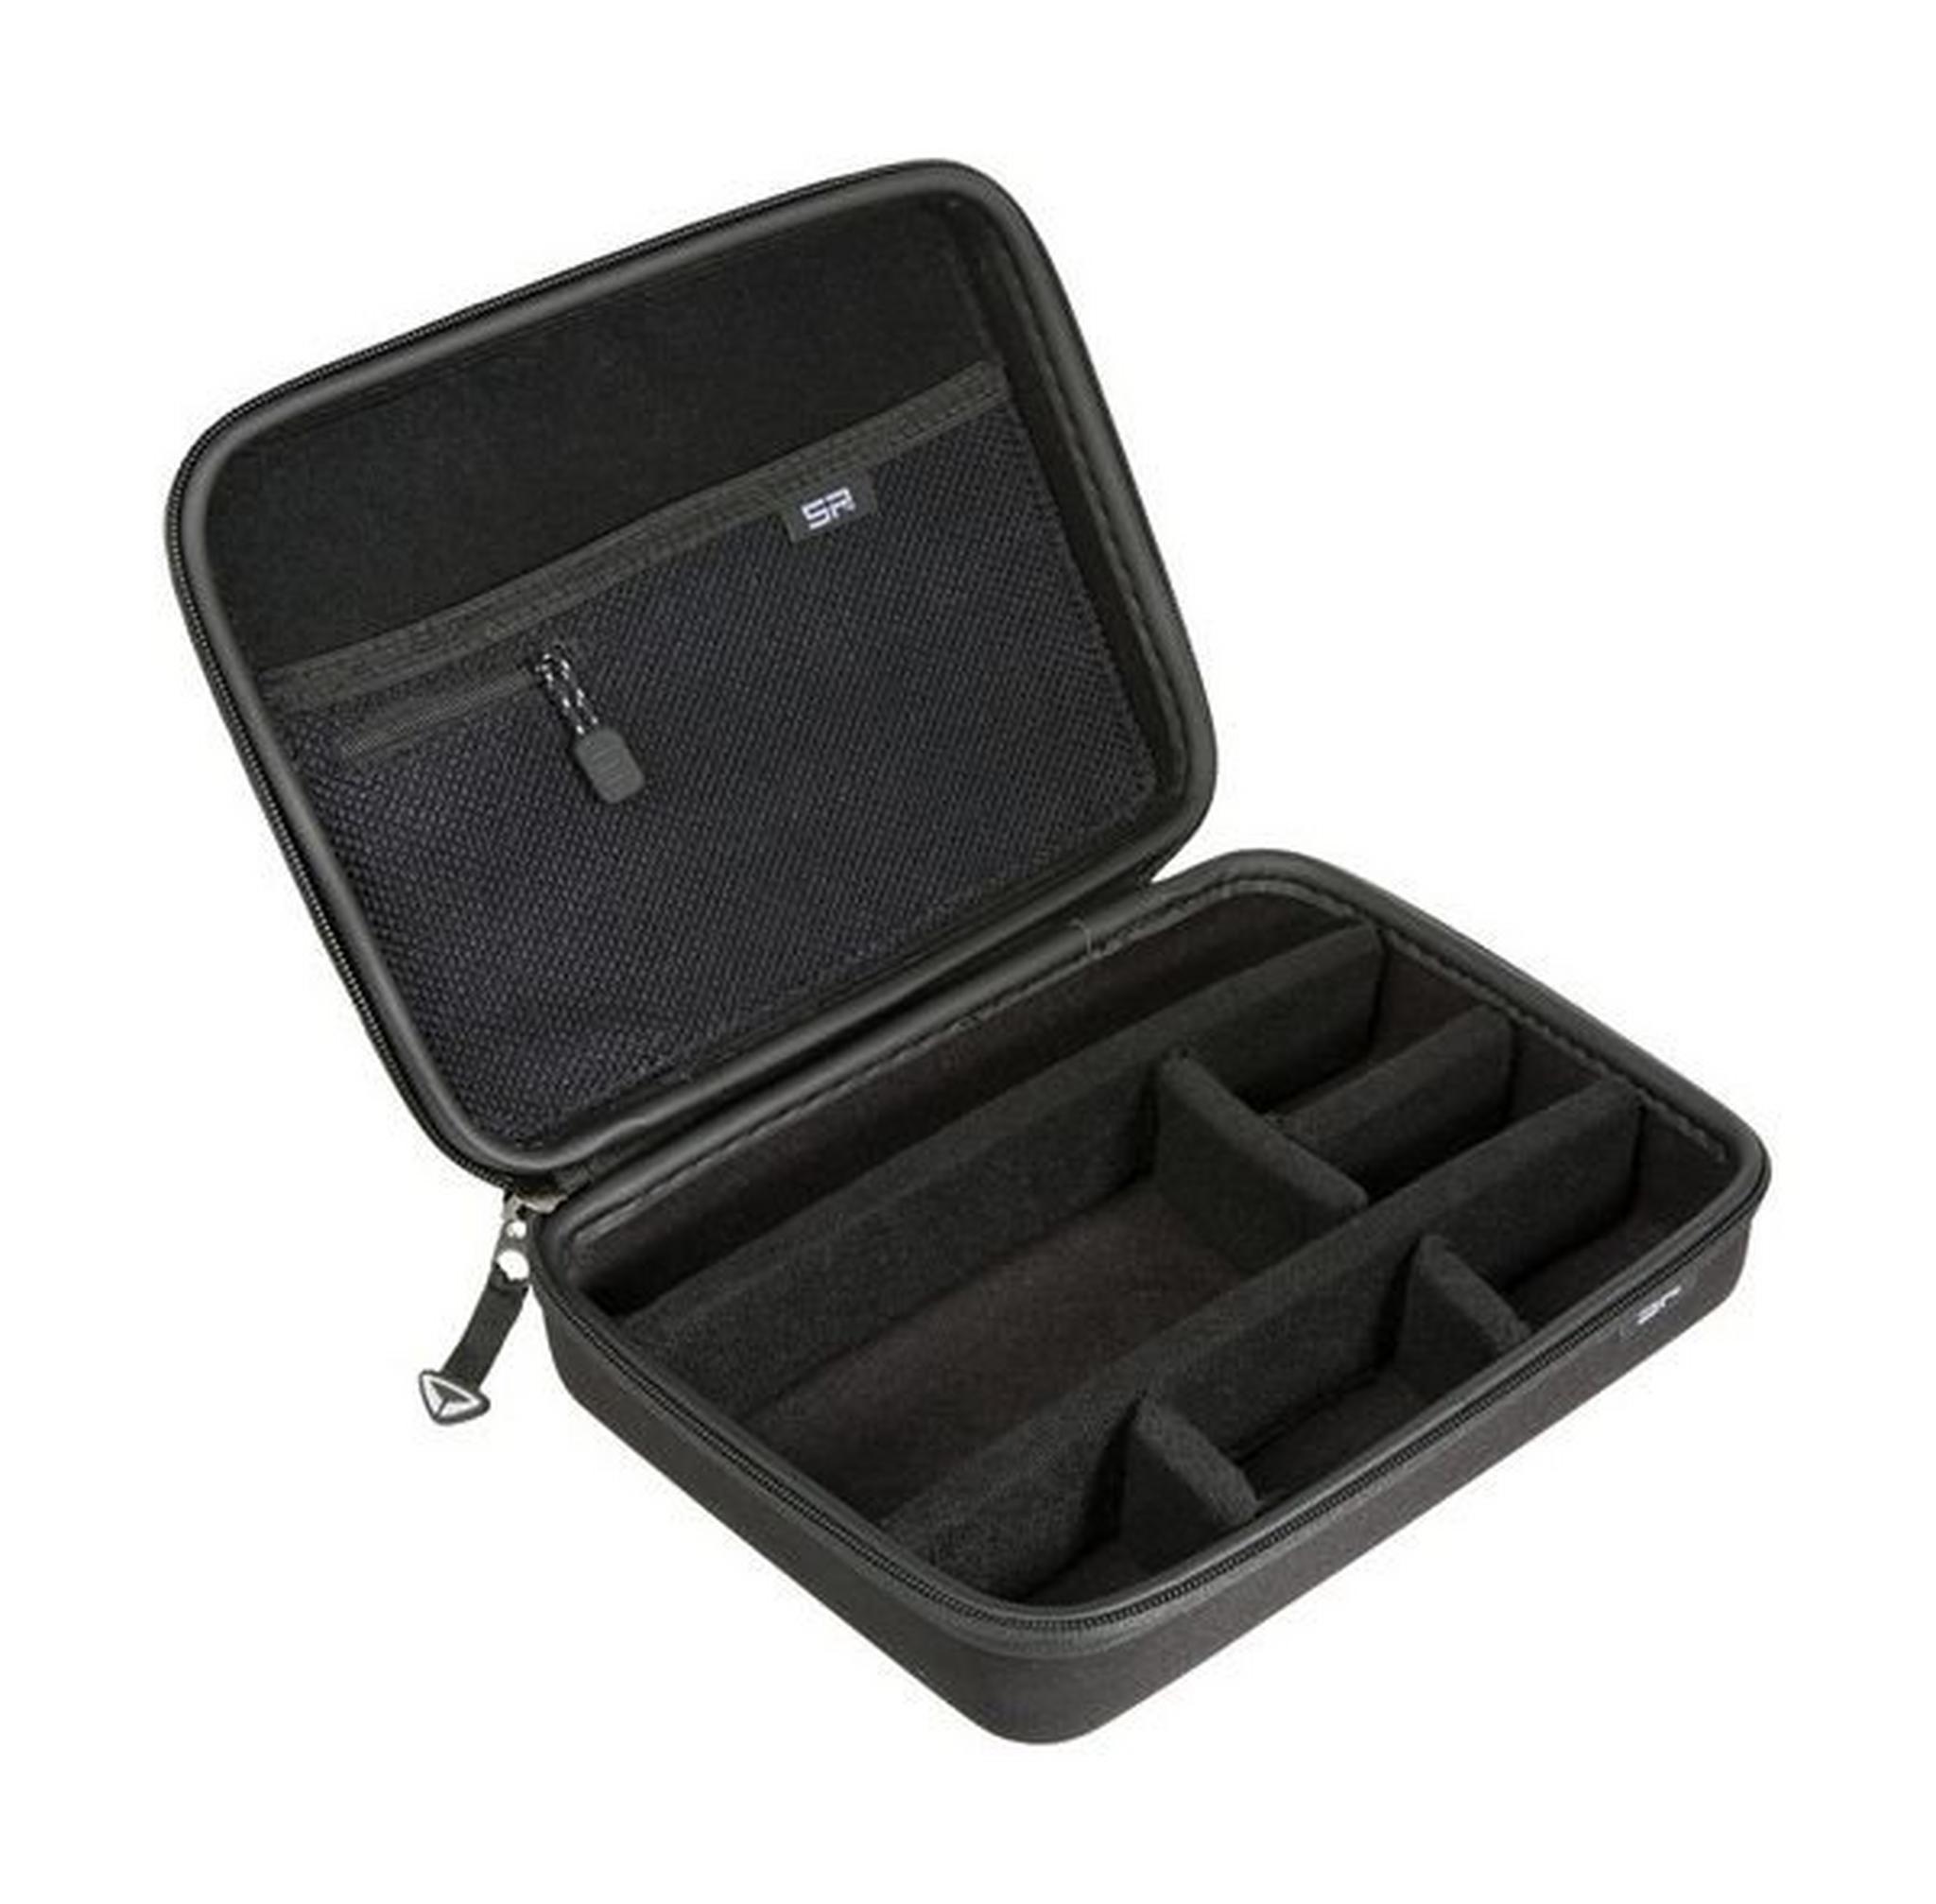 حقيبة حماية يوني كيس لكاميرا جو برو من إس بي يونايتد – حجم صغير – أسود (52022)